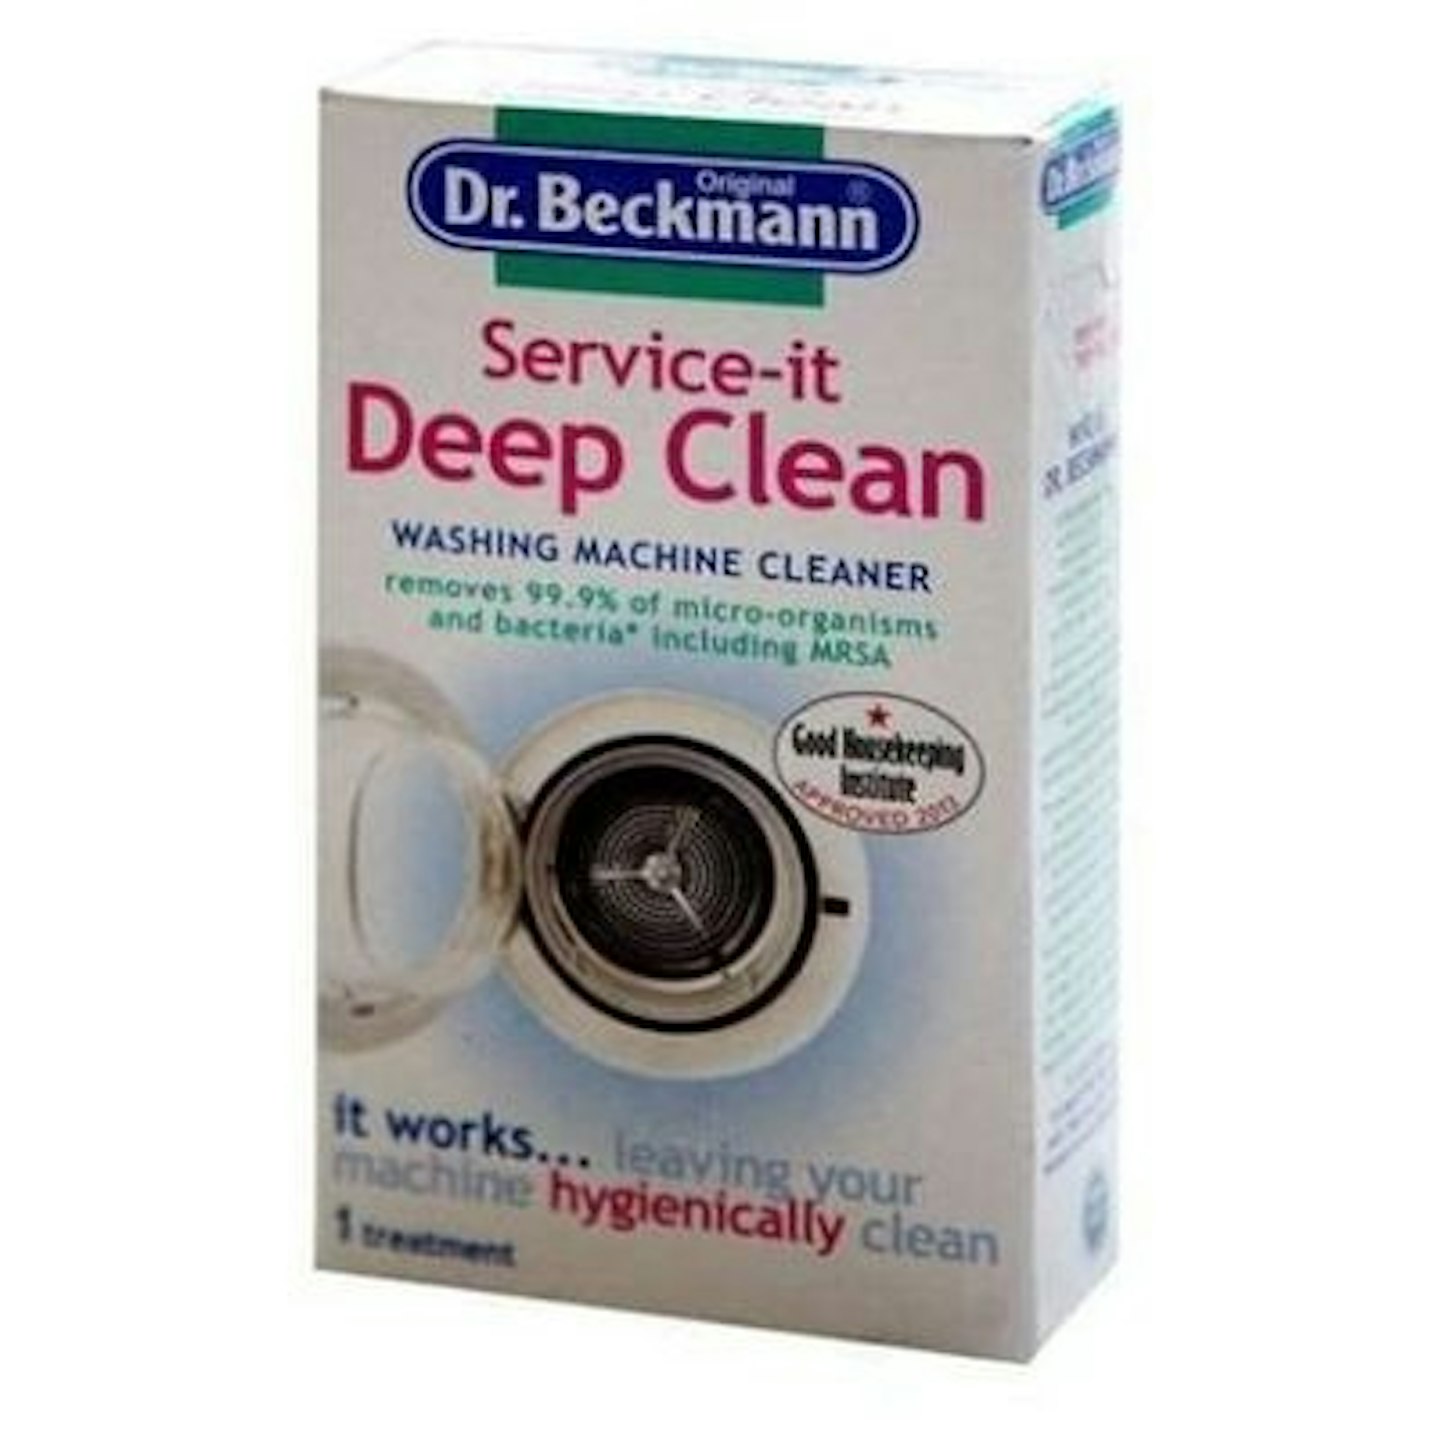 Dr Beckmann Service-It Deep Clean Washing Machine Cleaner